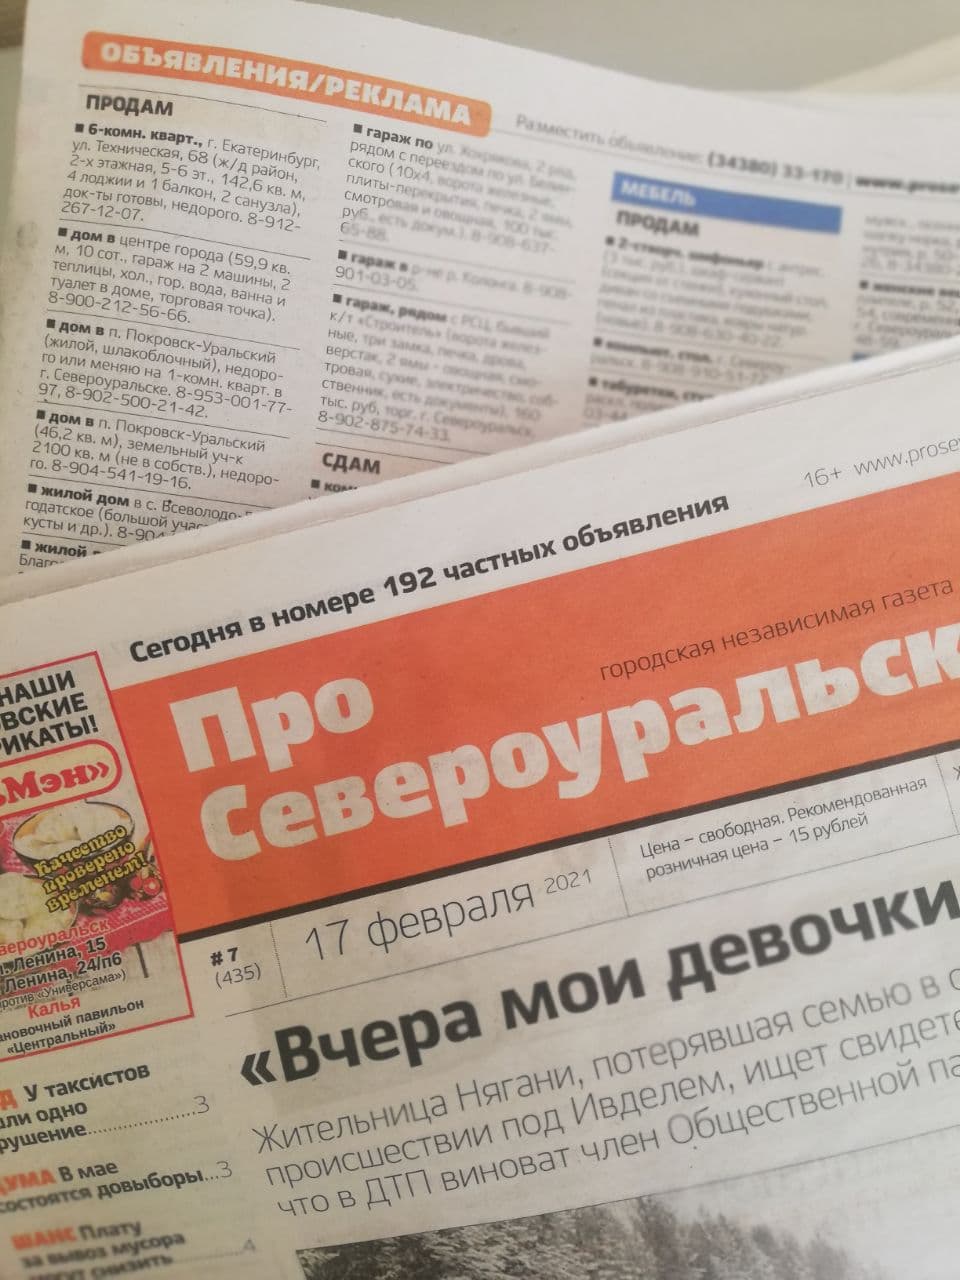 Объявления из газеты "ПроСевероуральск.ru" № 8 от 24 февраля 2021 года